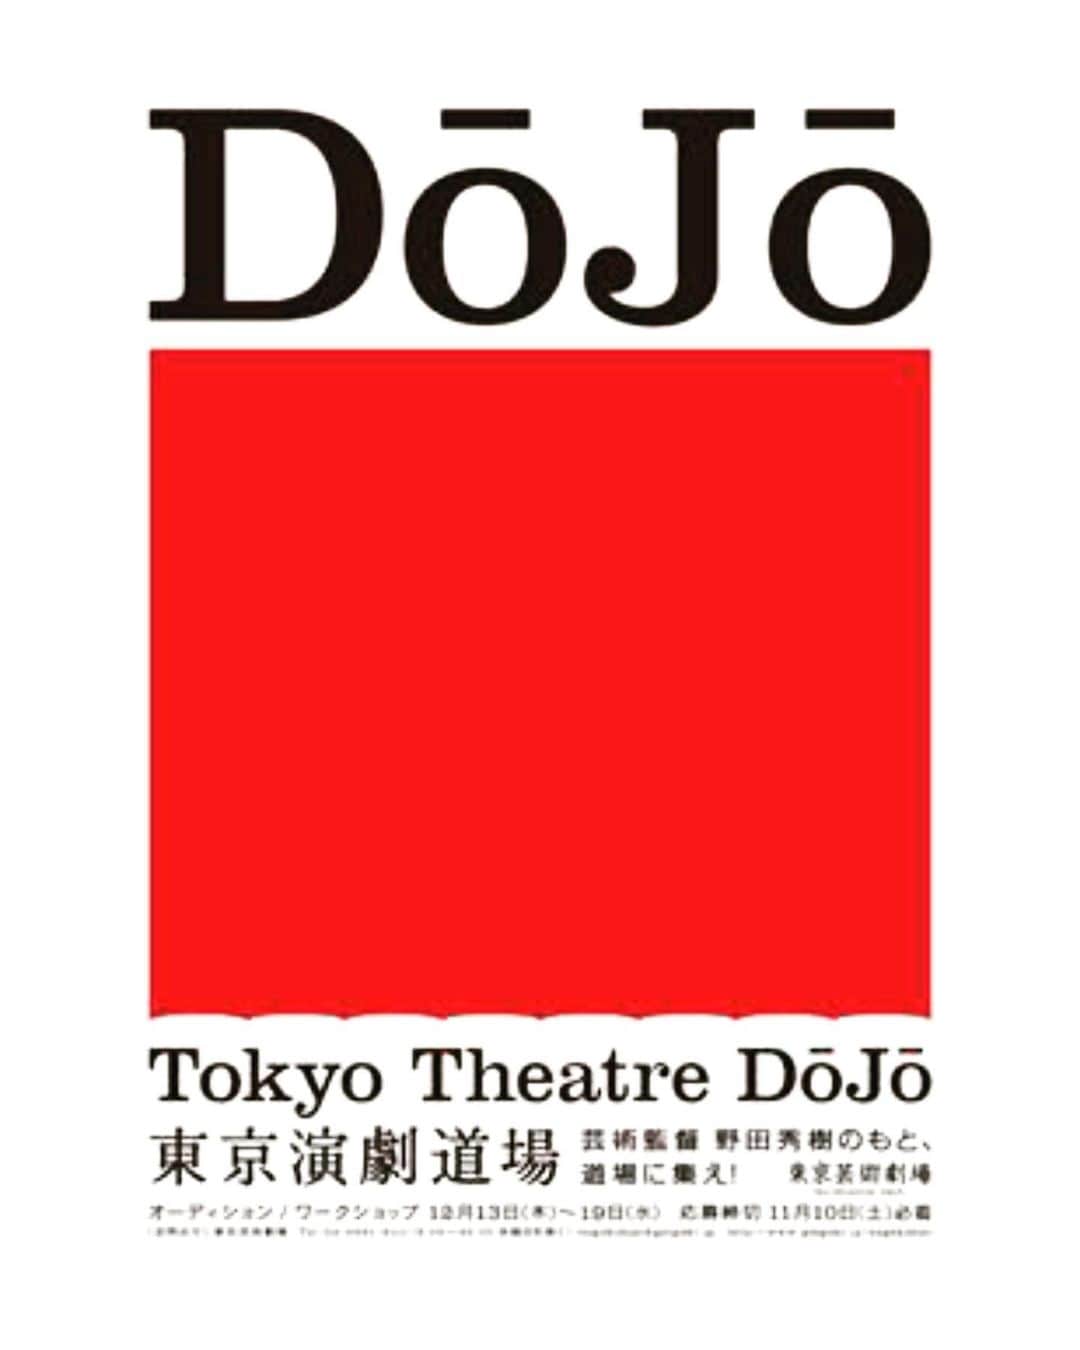 高畑裕太のインスタグラム：「《東京演劇道場について》  先日の NODA・MAP 『Q ：A Night at the Kabuki 』観劇に際して。  ずっとタイミングを伺っていたのですが良い機会？かな？と感じたのでご報告させて頂きます。  昨年末のオーディションで合格通知を頂き、この度、東京芸術劇場の「東京演劇道場」に二期生として参加させて頂く事になりました。  「東京演劇道場」では、野田さんをはじめ、国内外において多方面の分野で活躍されているアーティストの皆様をお招きしたWSを実施しております。  また、2020年夏には演劇道場が主催となり「赤鬼」公演も実施致しました。 この様にWSや企画公演の上演等が行われ、芝居人同士が互いに刺激を受け合う修行の場として設けられております。  修行もかなり行いました。 もっと修行したいです。 そして何より、今後ともこの喜びを噛み締めていられる様に、心頭滅却の精神で創作と向き合っていければと思います。  今後、公演等に参加させて頂く場合は改めてお知らせ致しますが、一先ずこの報告が出来た事を嬉しく思います。 何卒、宜しくお願い致します！ 押忍！！！！！  P.S 『Q』はめちゃくちゃ面白くて、演劇…スゲェ………。という様に、涙が止まりませんでした。細かくは高畑裕太のツイート参照です。是非に。  #東京演劇道場 #東京芸術劇場 #野田秀樹 #Q」